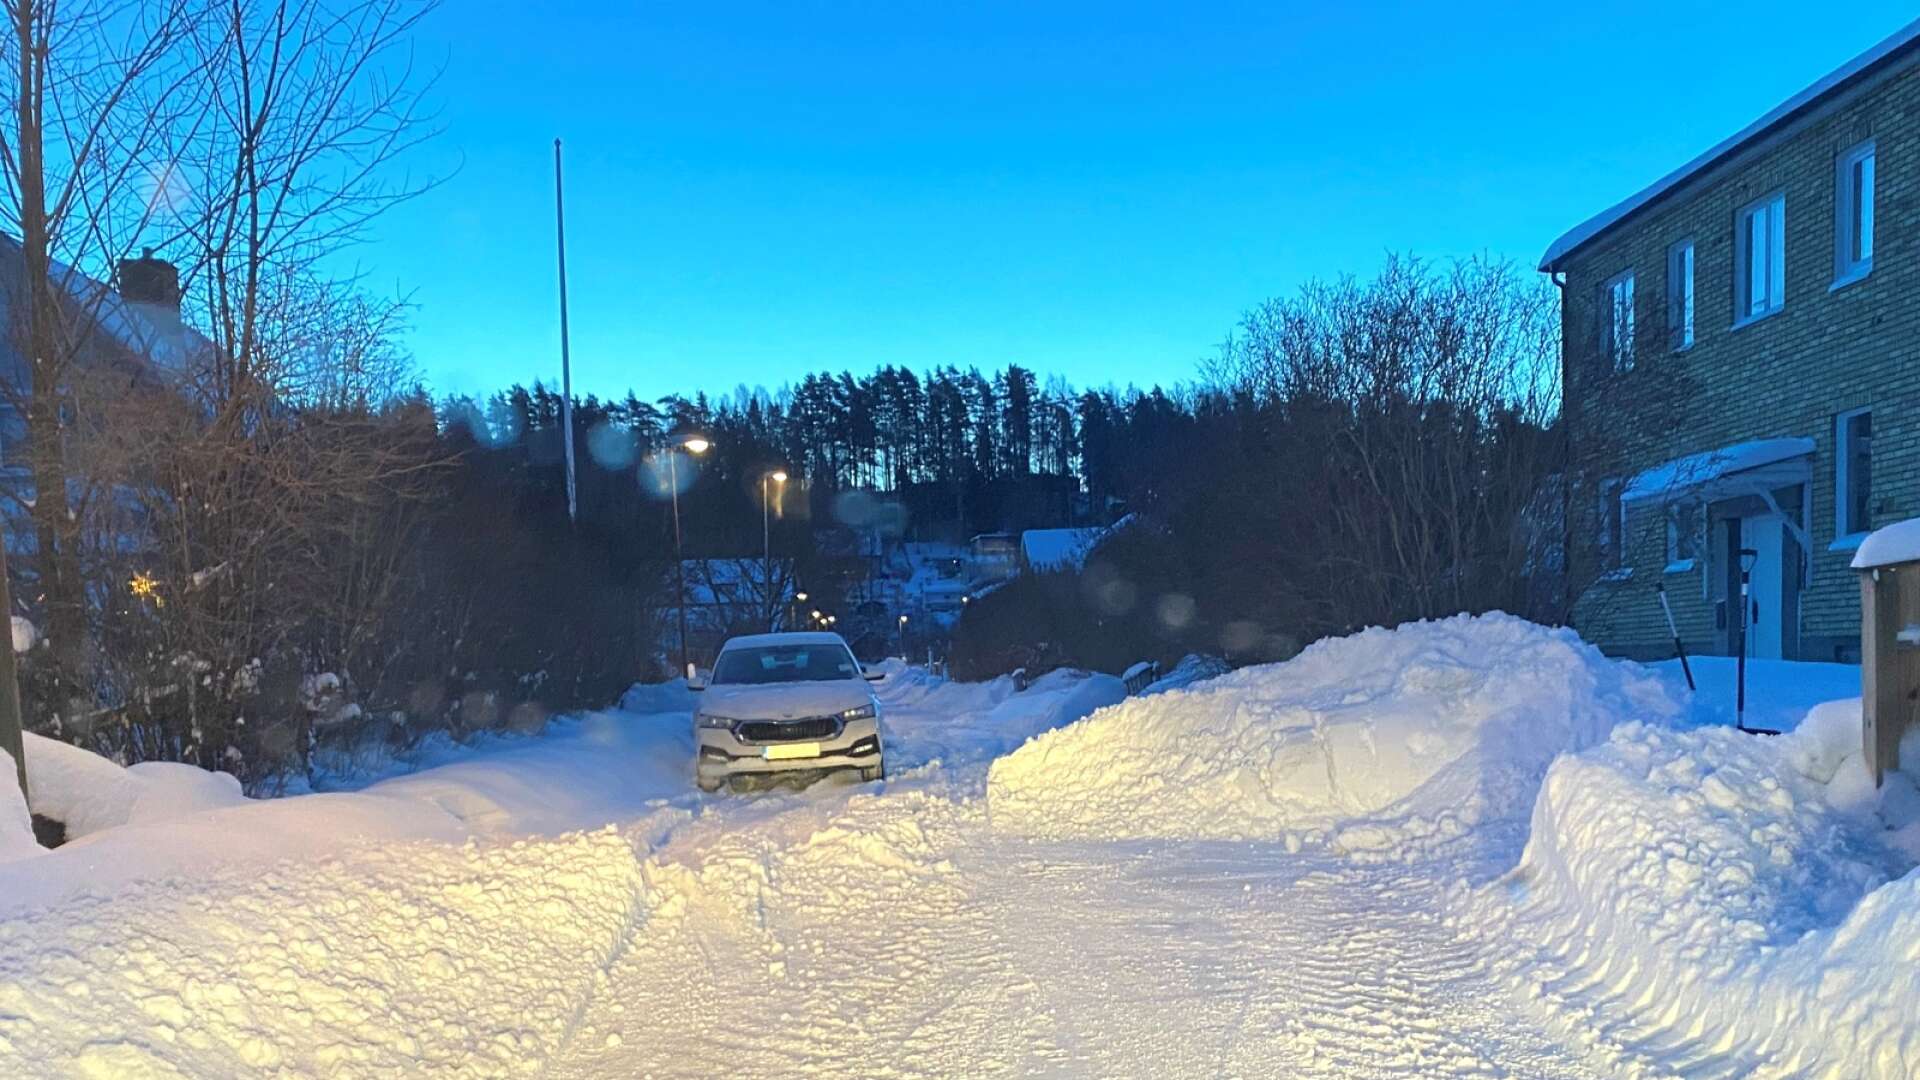 Morgonen den 18 januari hade inte snöröjningen kunnat utföras på Spectorsgatan och man kunde inte passera. En snövall placerades framför och en bakom bilarna på den aktuella adressen.